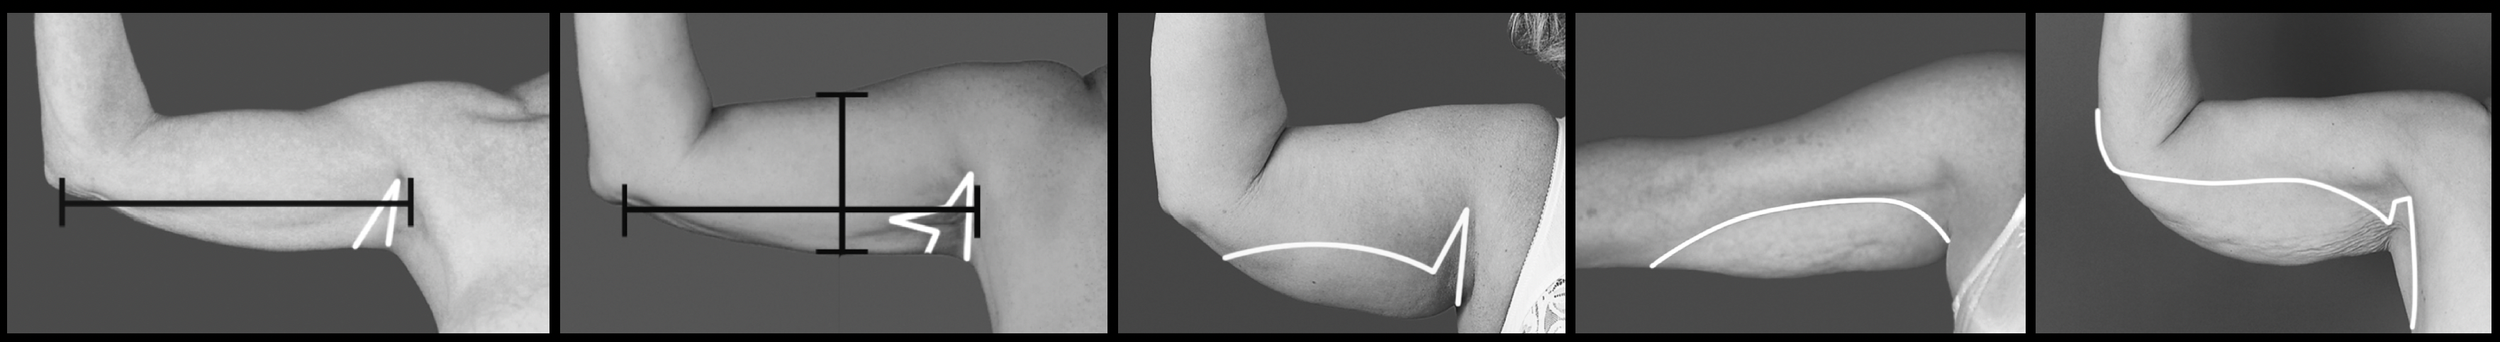 Litteken van een armlift of brachioplastiek door combinatie van liposuctie en huidexcisie